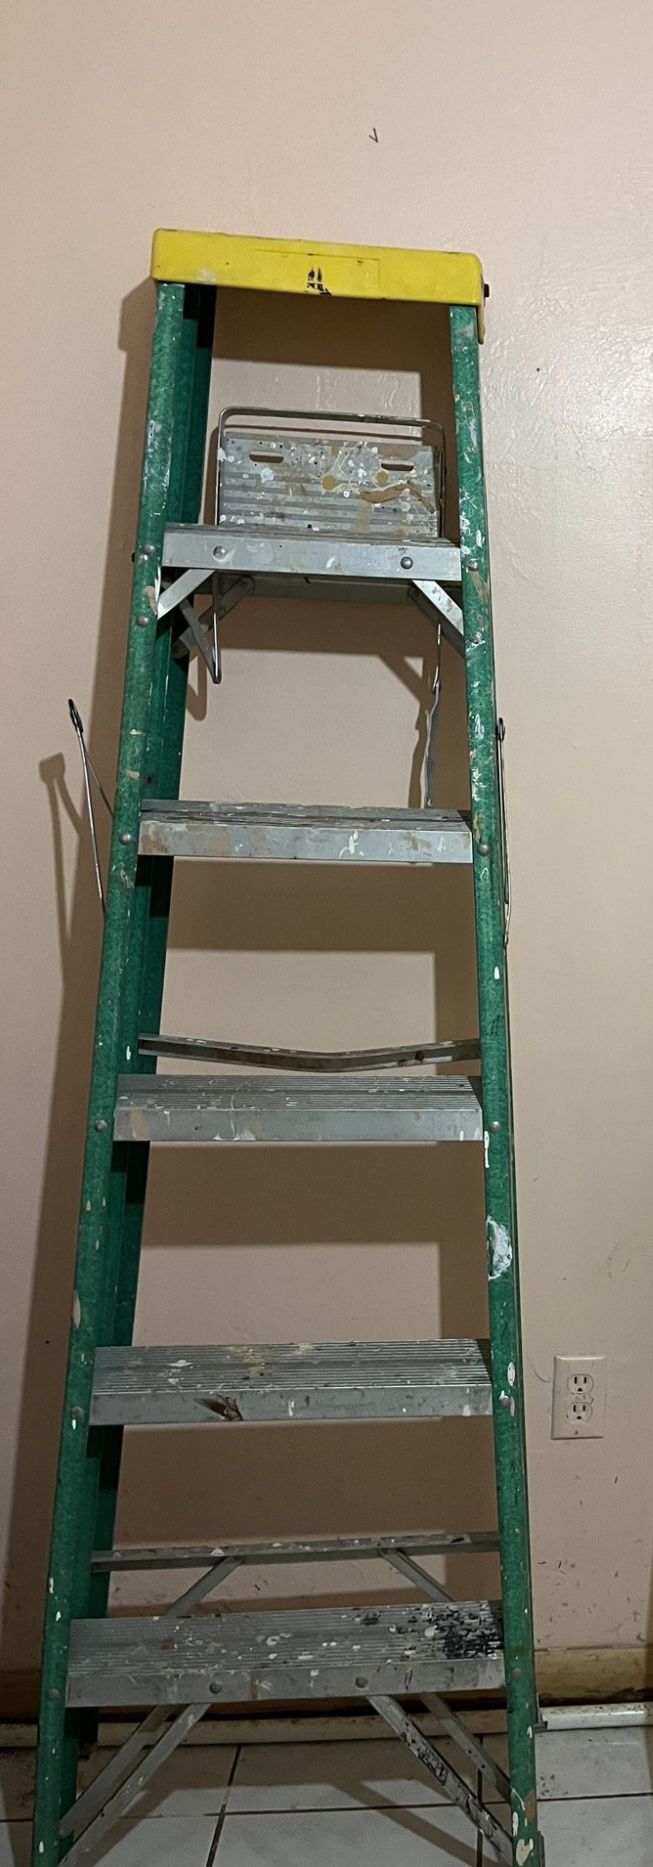 Ladder fiberglass - 6 Feet